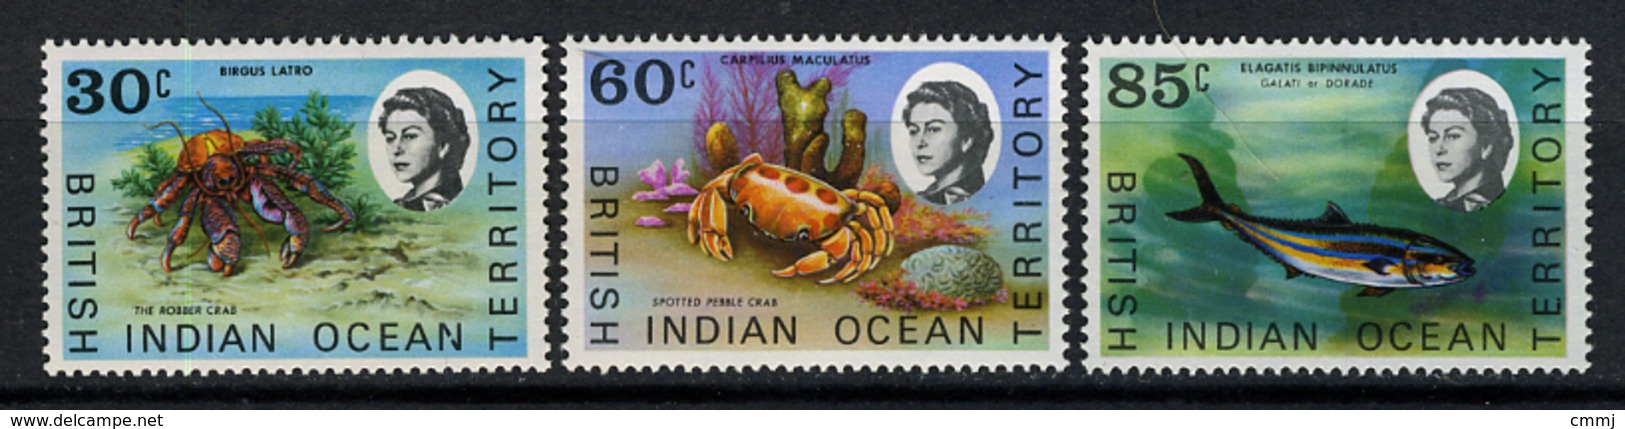 1968 - TERRITORIO BRITANNICO DELL'OCEANO INDIANO - Mi. Nr. 36/38 - NLH - (CW2427.44) - British Indian Ocean Territory (BIOT)